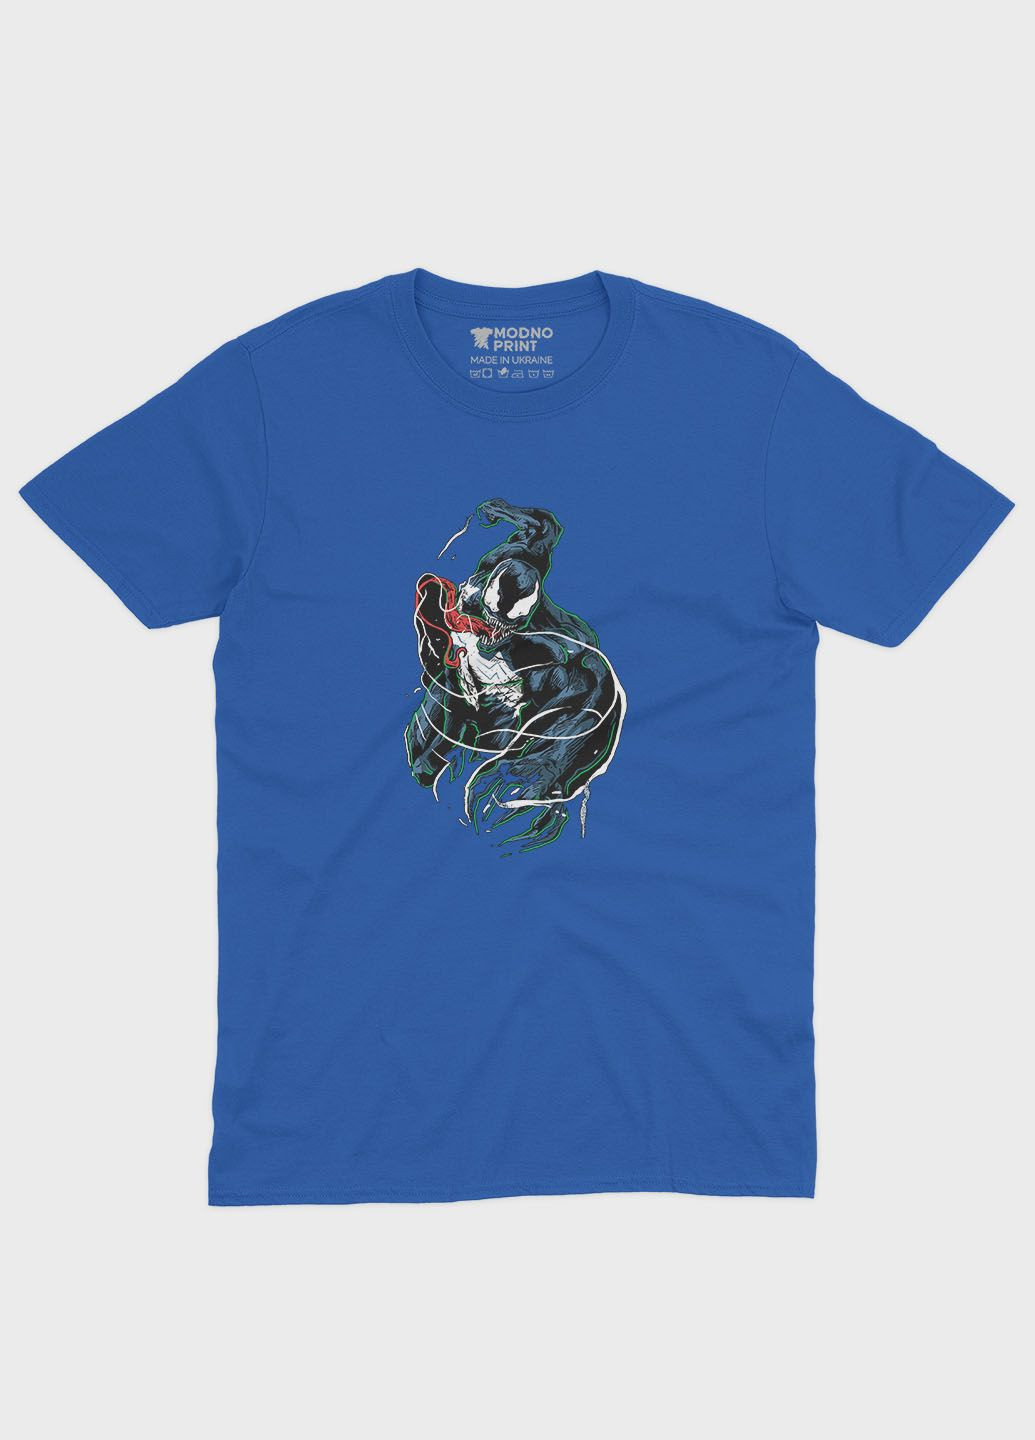 Синяя демисезонная футболка для мальчика с принтом супервора - веном (ts001-1-brr-006-013-005-b) Modno